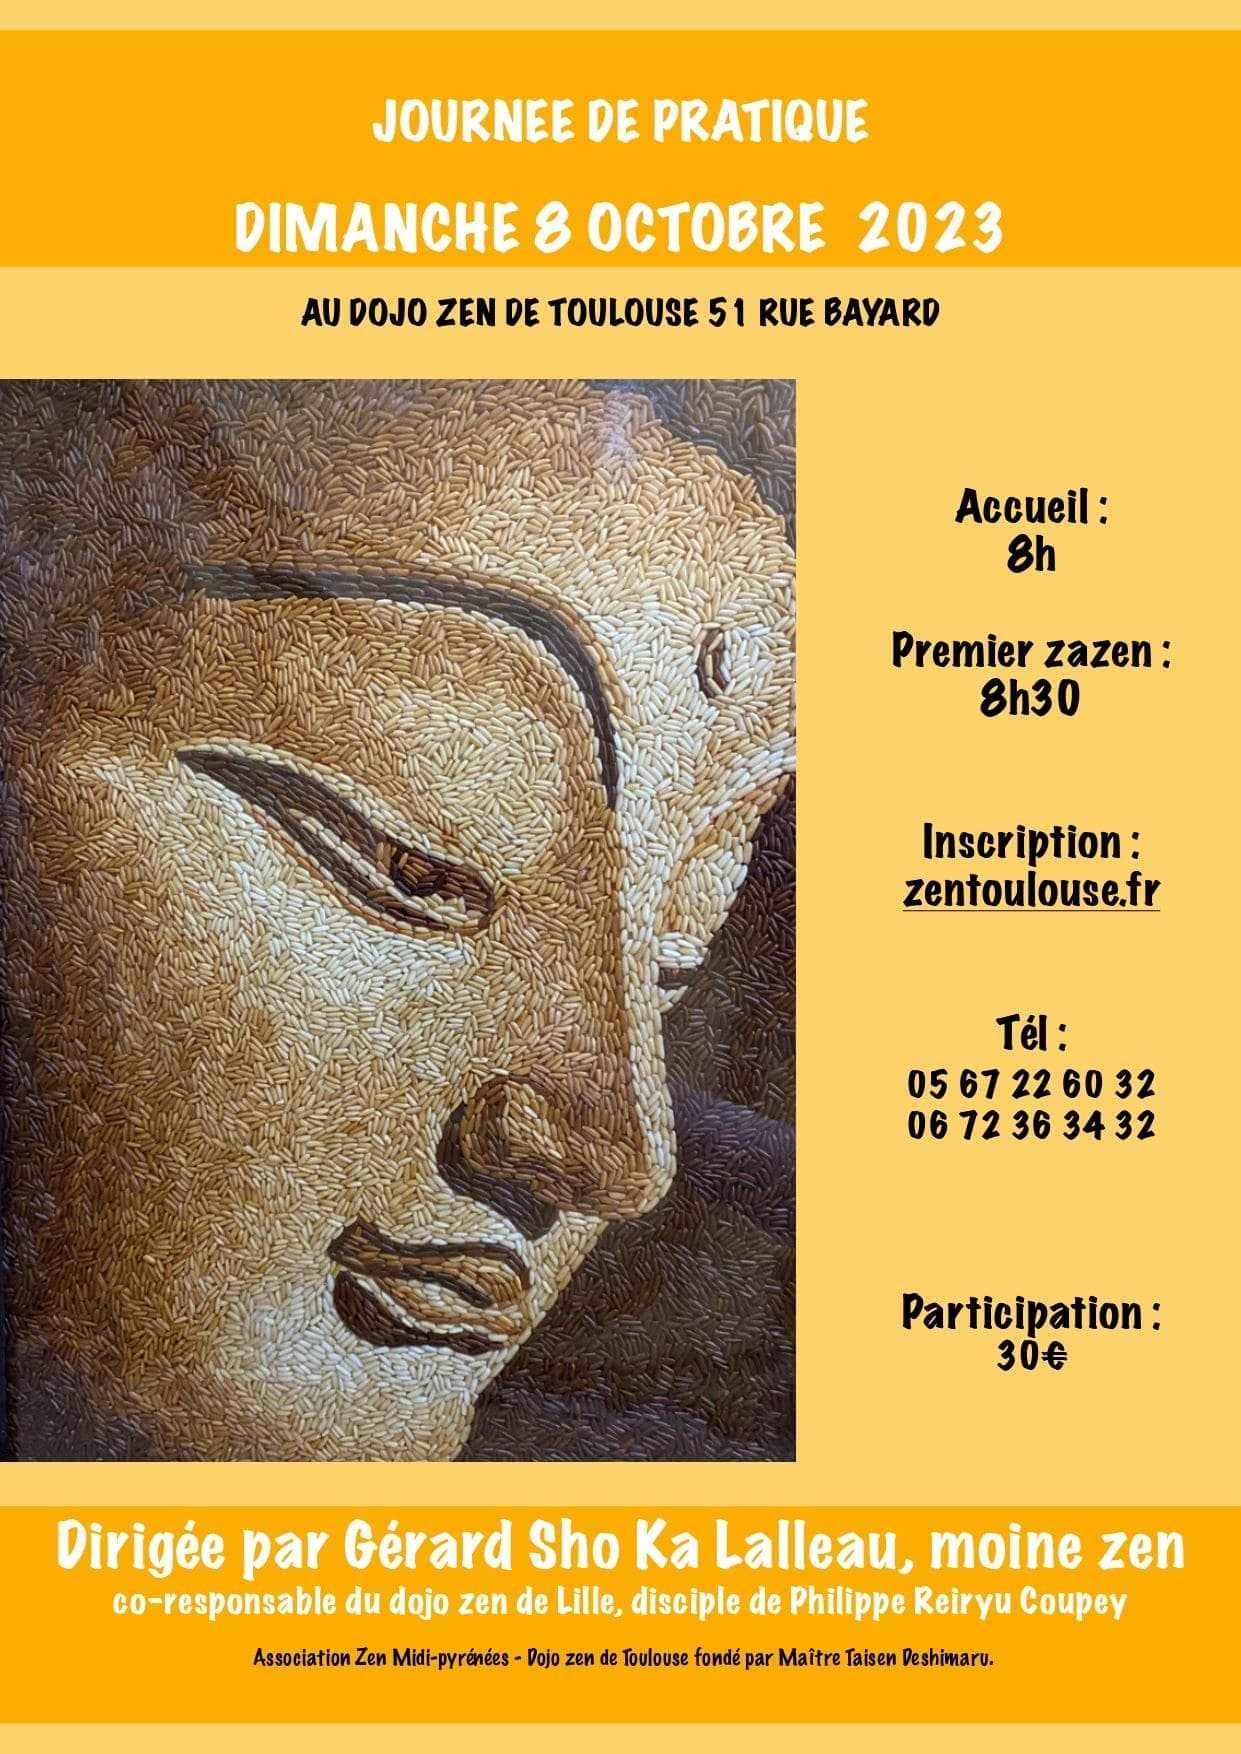 Journée de zazen au Dojo zen de Toulouse dirigée par Gérard Sho Ka Lalleau, disciple de Philippe Reiryu Coupey